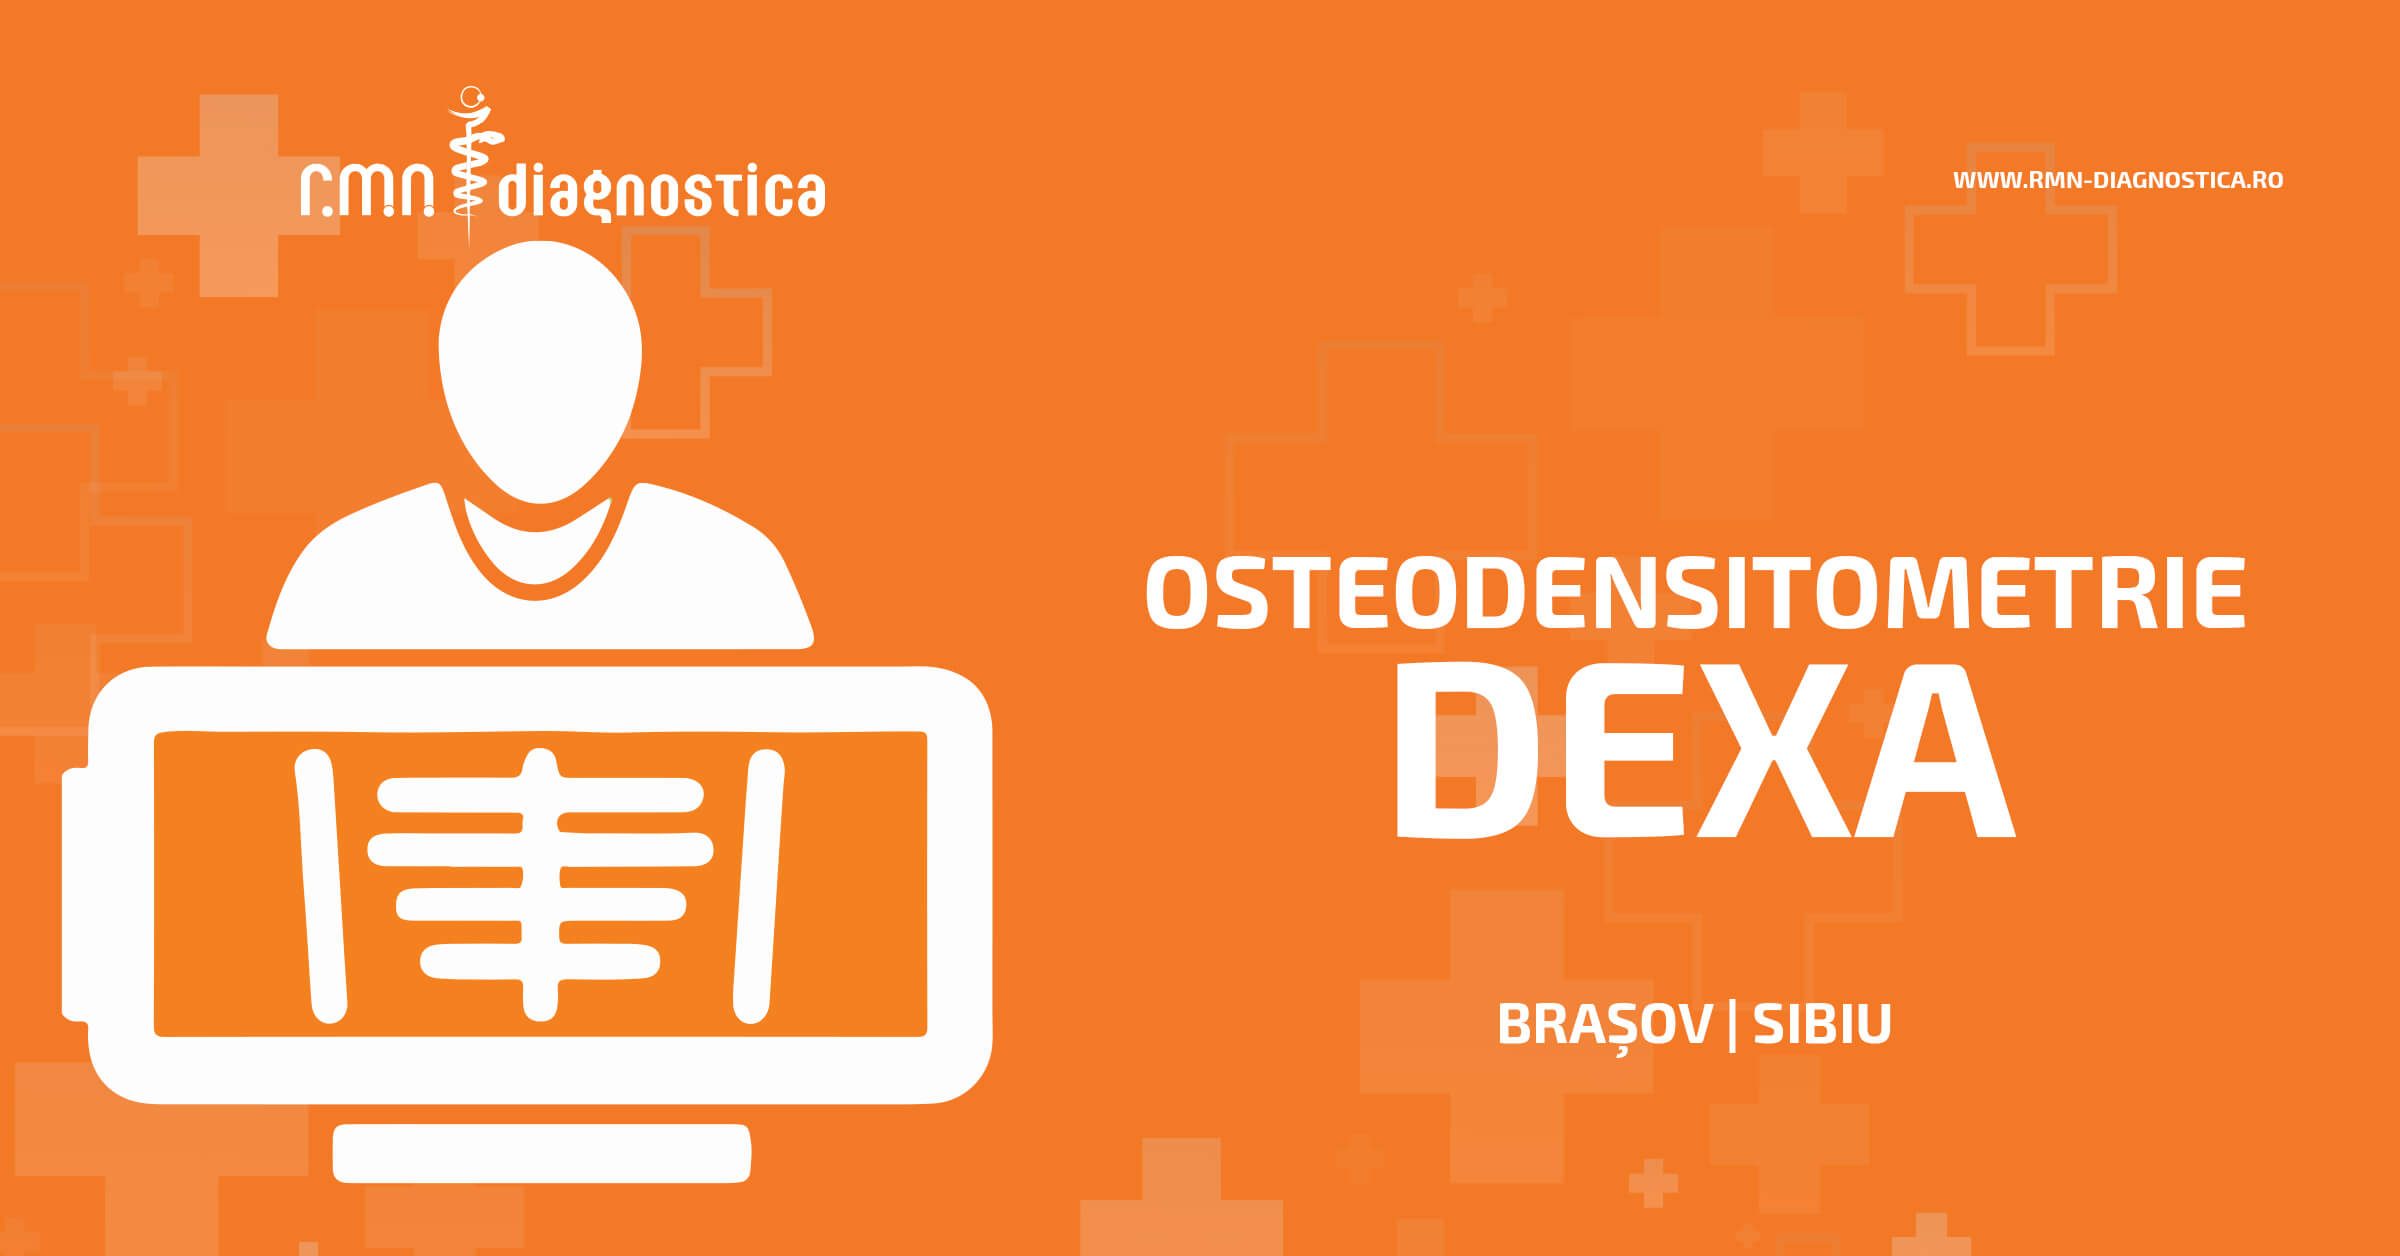 Osteodensitometria DEXA Sibiu Brasov RMN Diagnostica